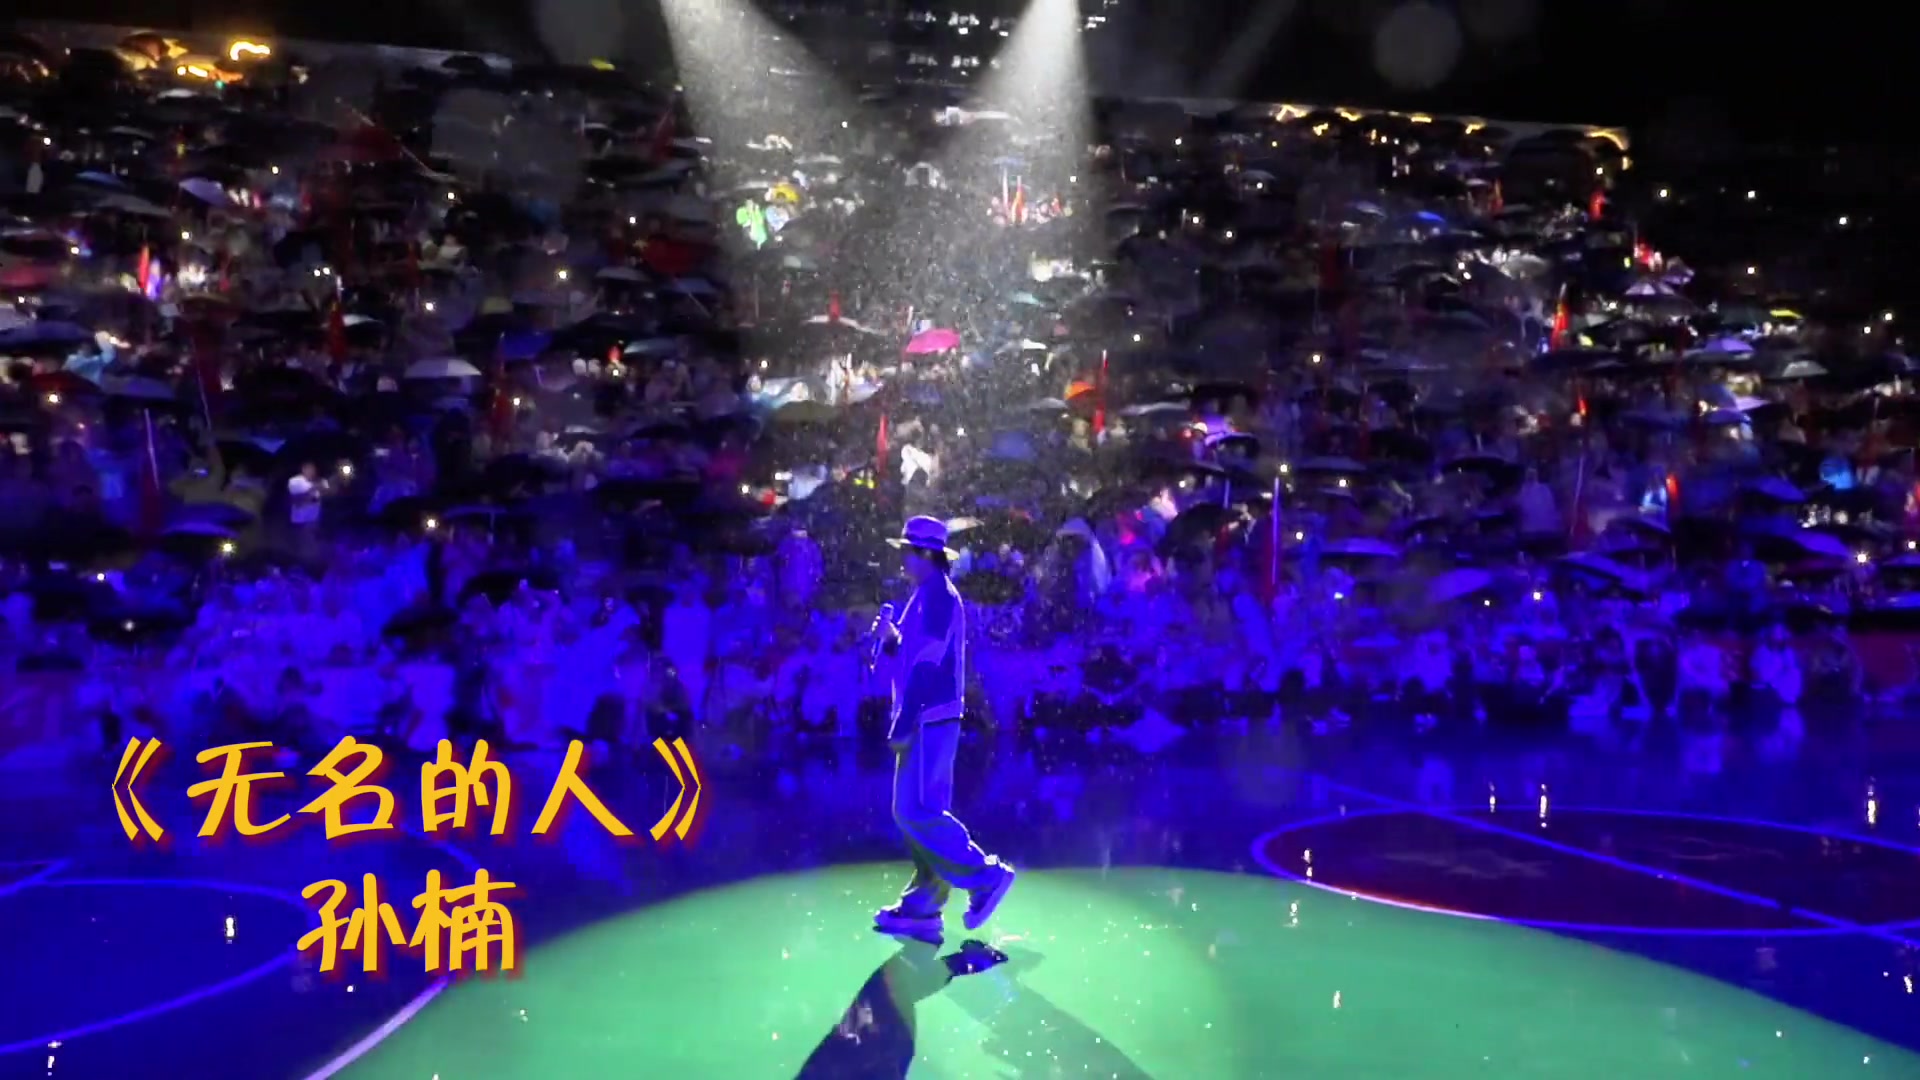 孙楠在村BA现场演唱《无名的人》，以此歌致敬所有贵州村BA的幕后人员